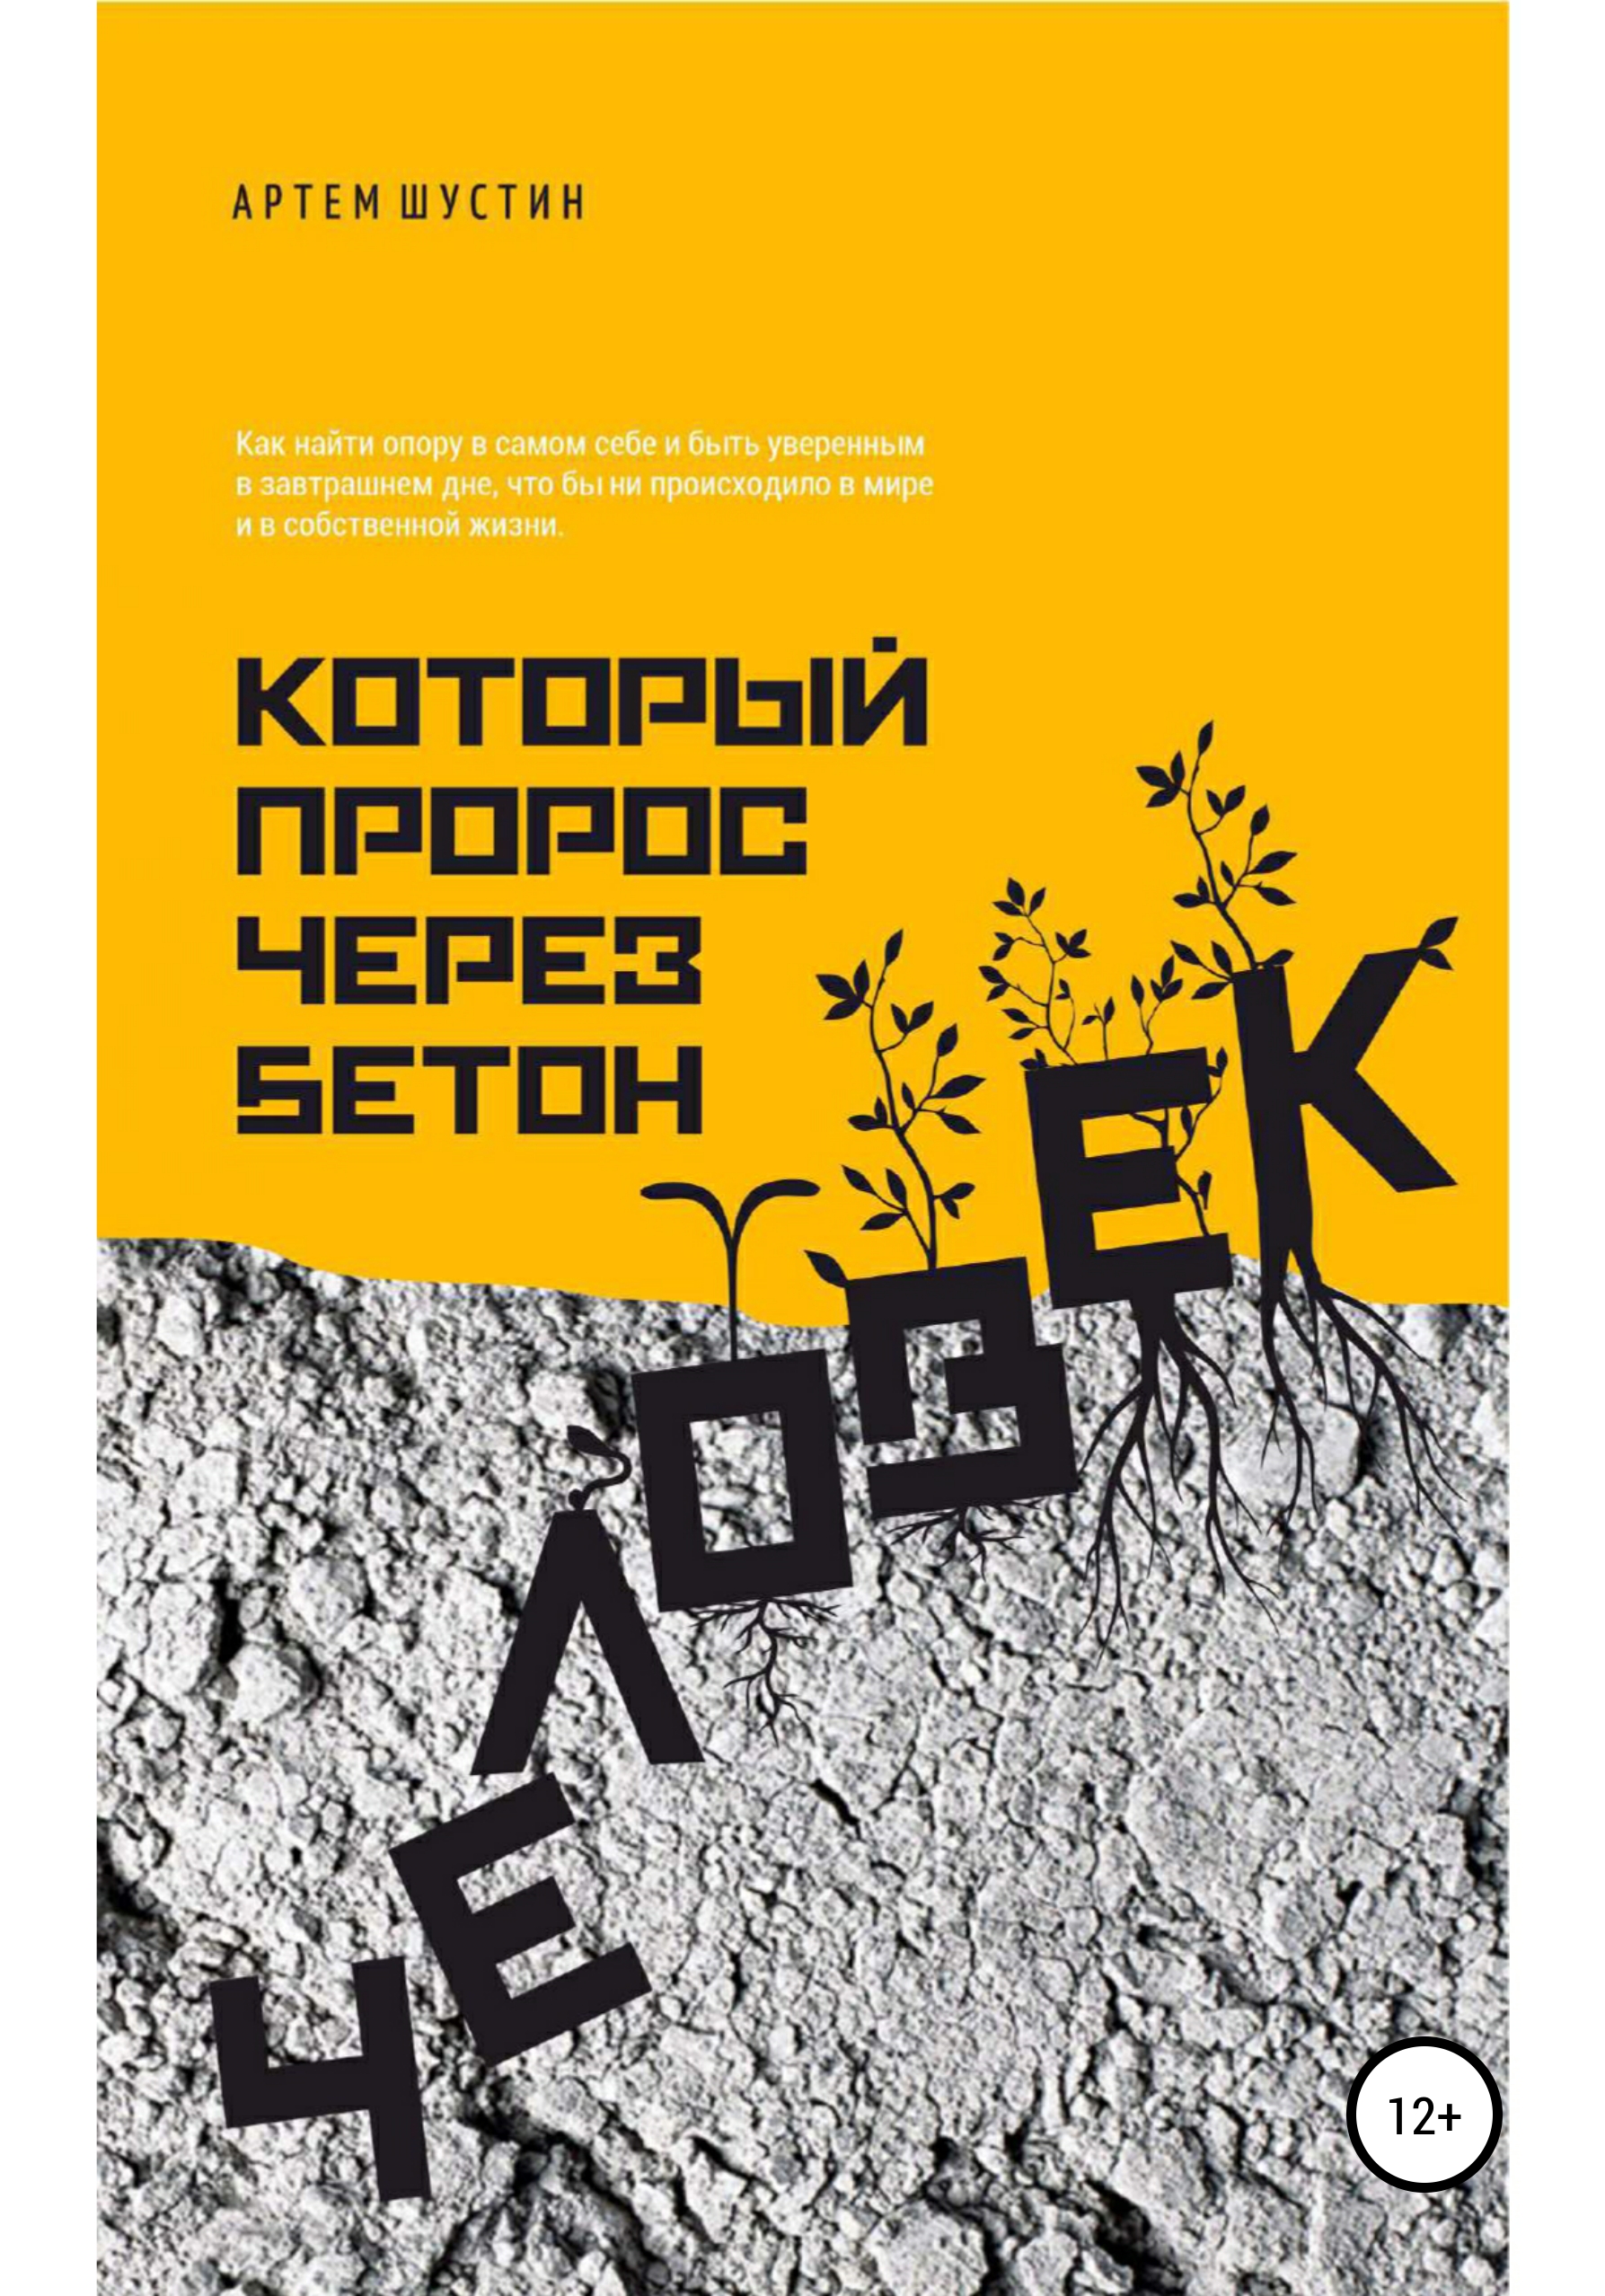 Человек, который пророс через бетон, Артем Шустин – скачать книгу fb2,  epub, pdf на ЛитРес